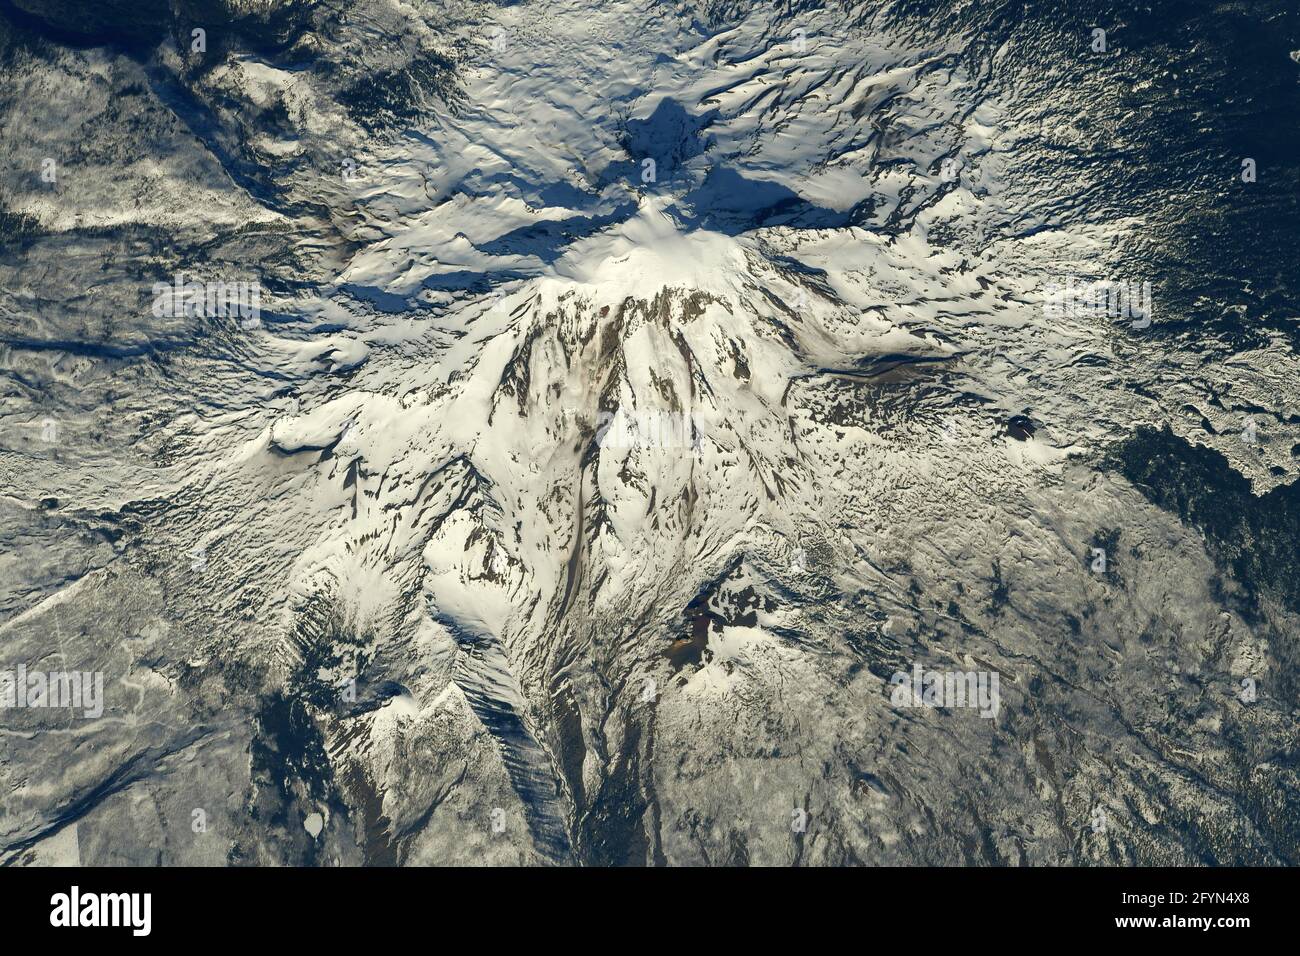 MOUNT ADAMS, États-Unis - 01 mai 2021 - Mount Adams photographié par un astronaute à la Station spatiale internationale. Situé dans l'État de Washington, le pos Banque D'Images